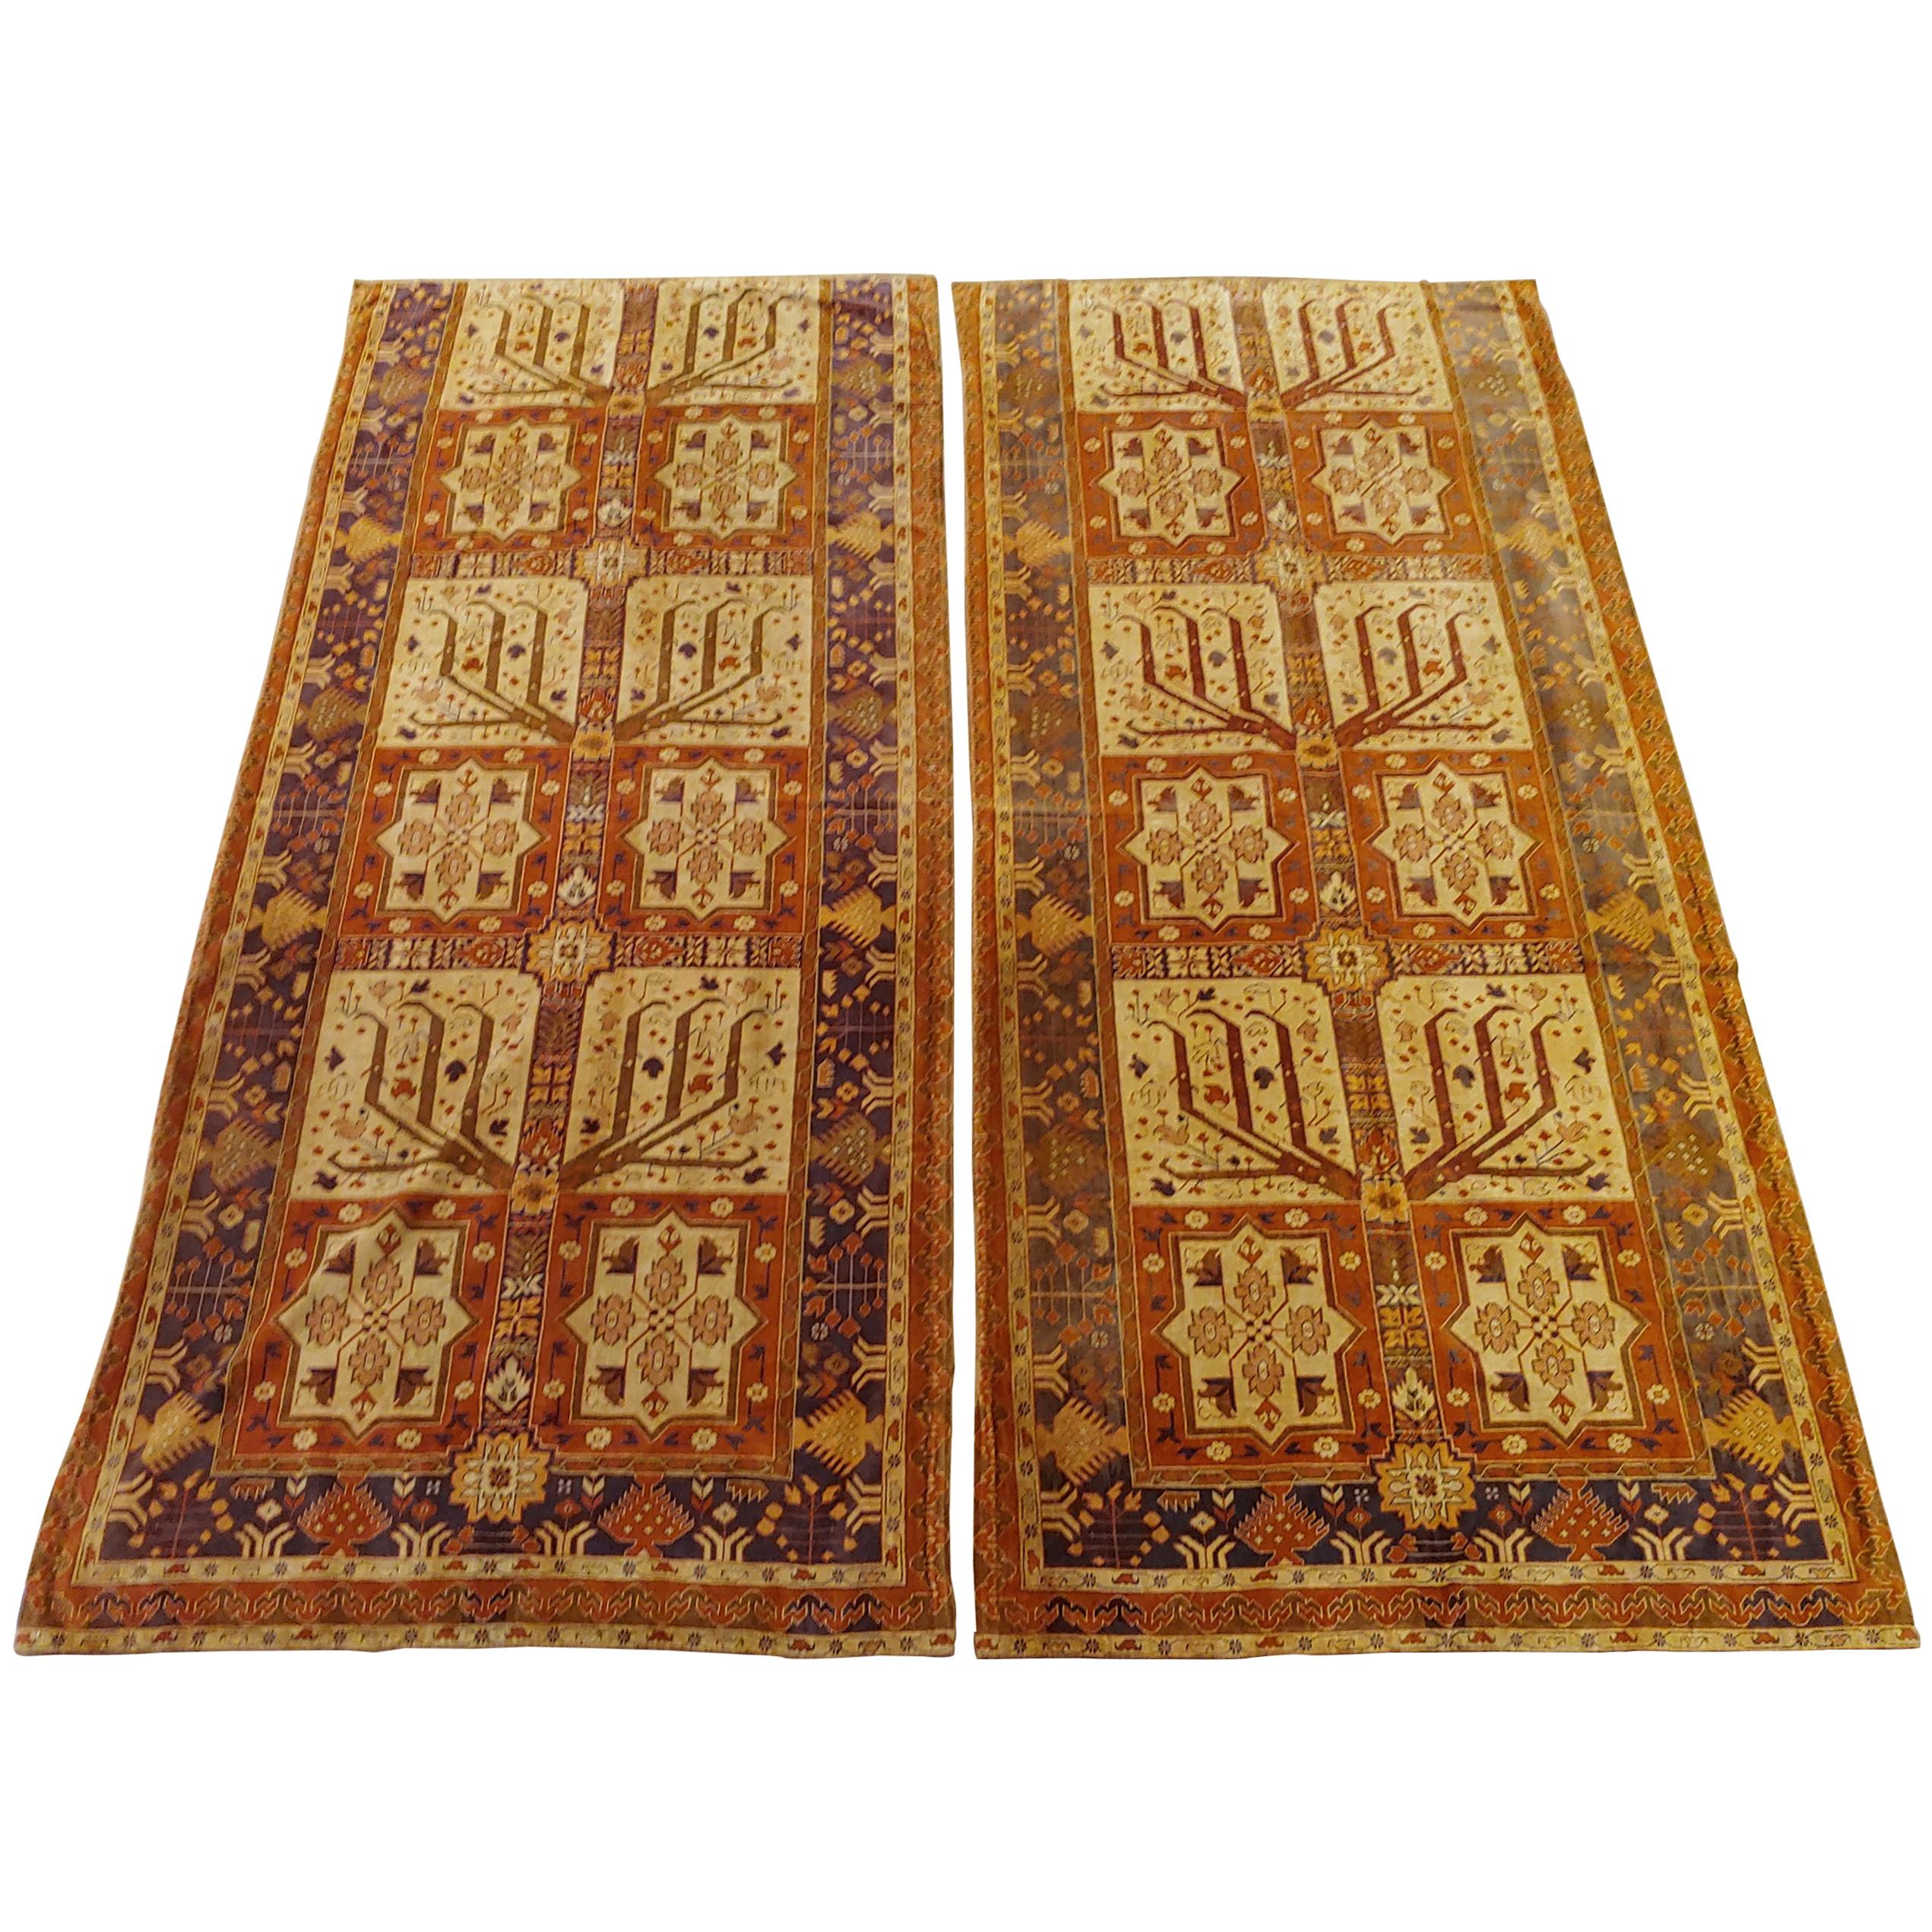 Semi-Antique English Portiere Velvet Tapestries, Turkish Work Design, Wool, 1940